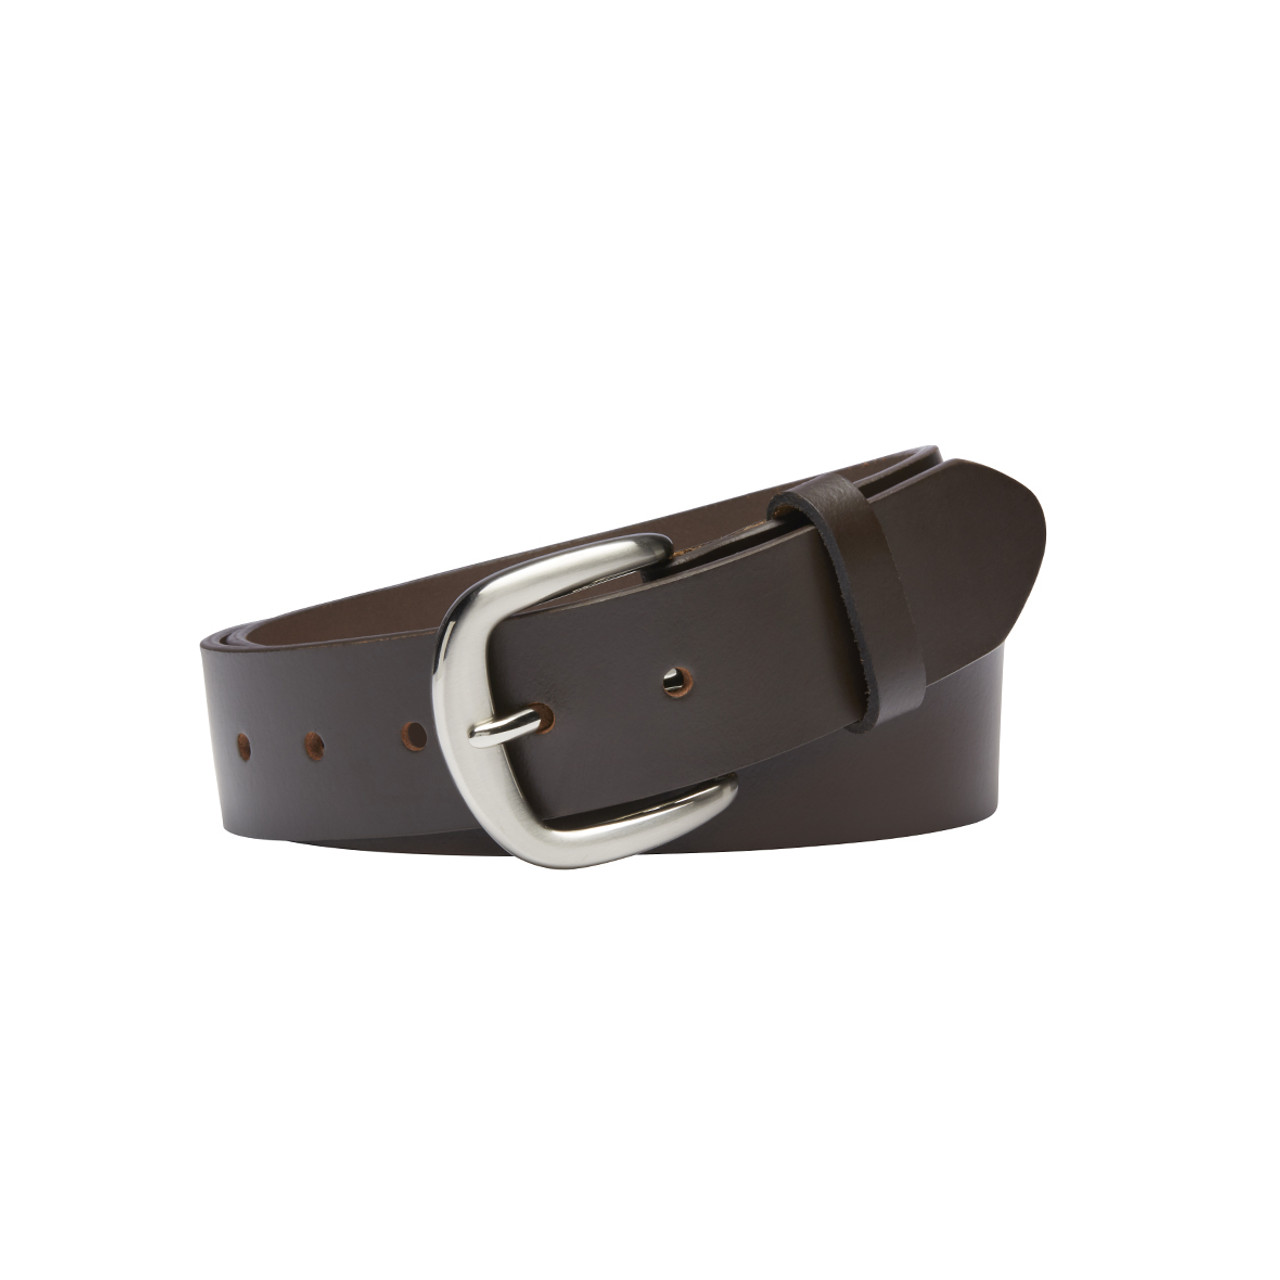 Australian Made Belts - Men's Top Grain Leather Belts - Buckle